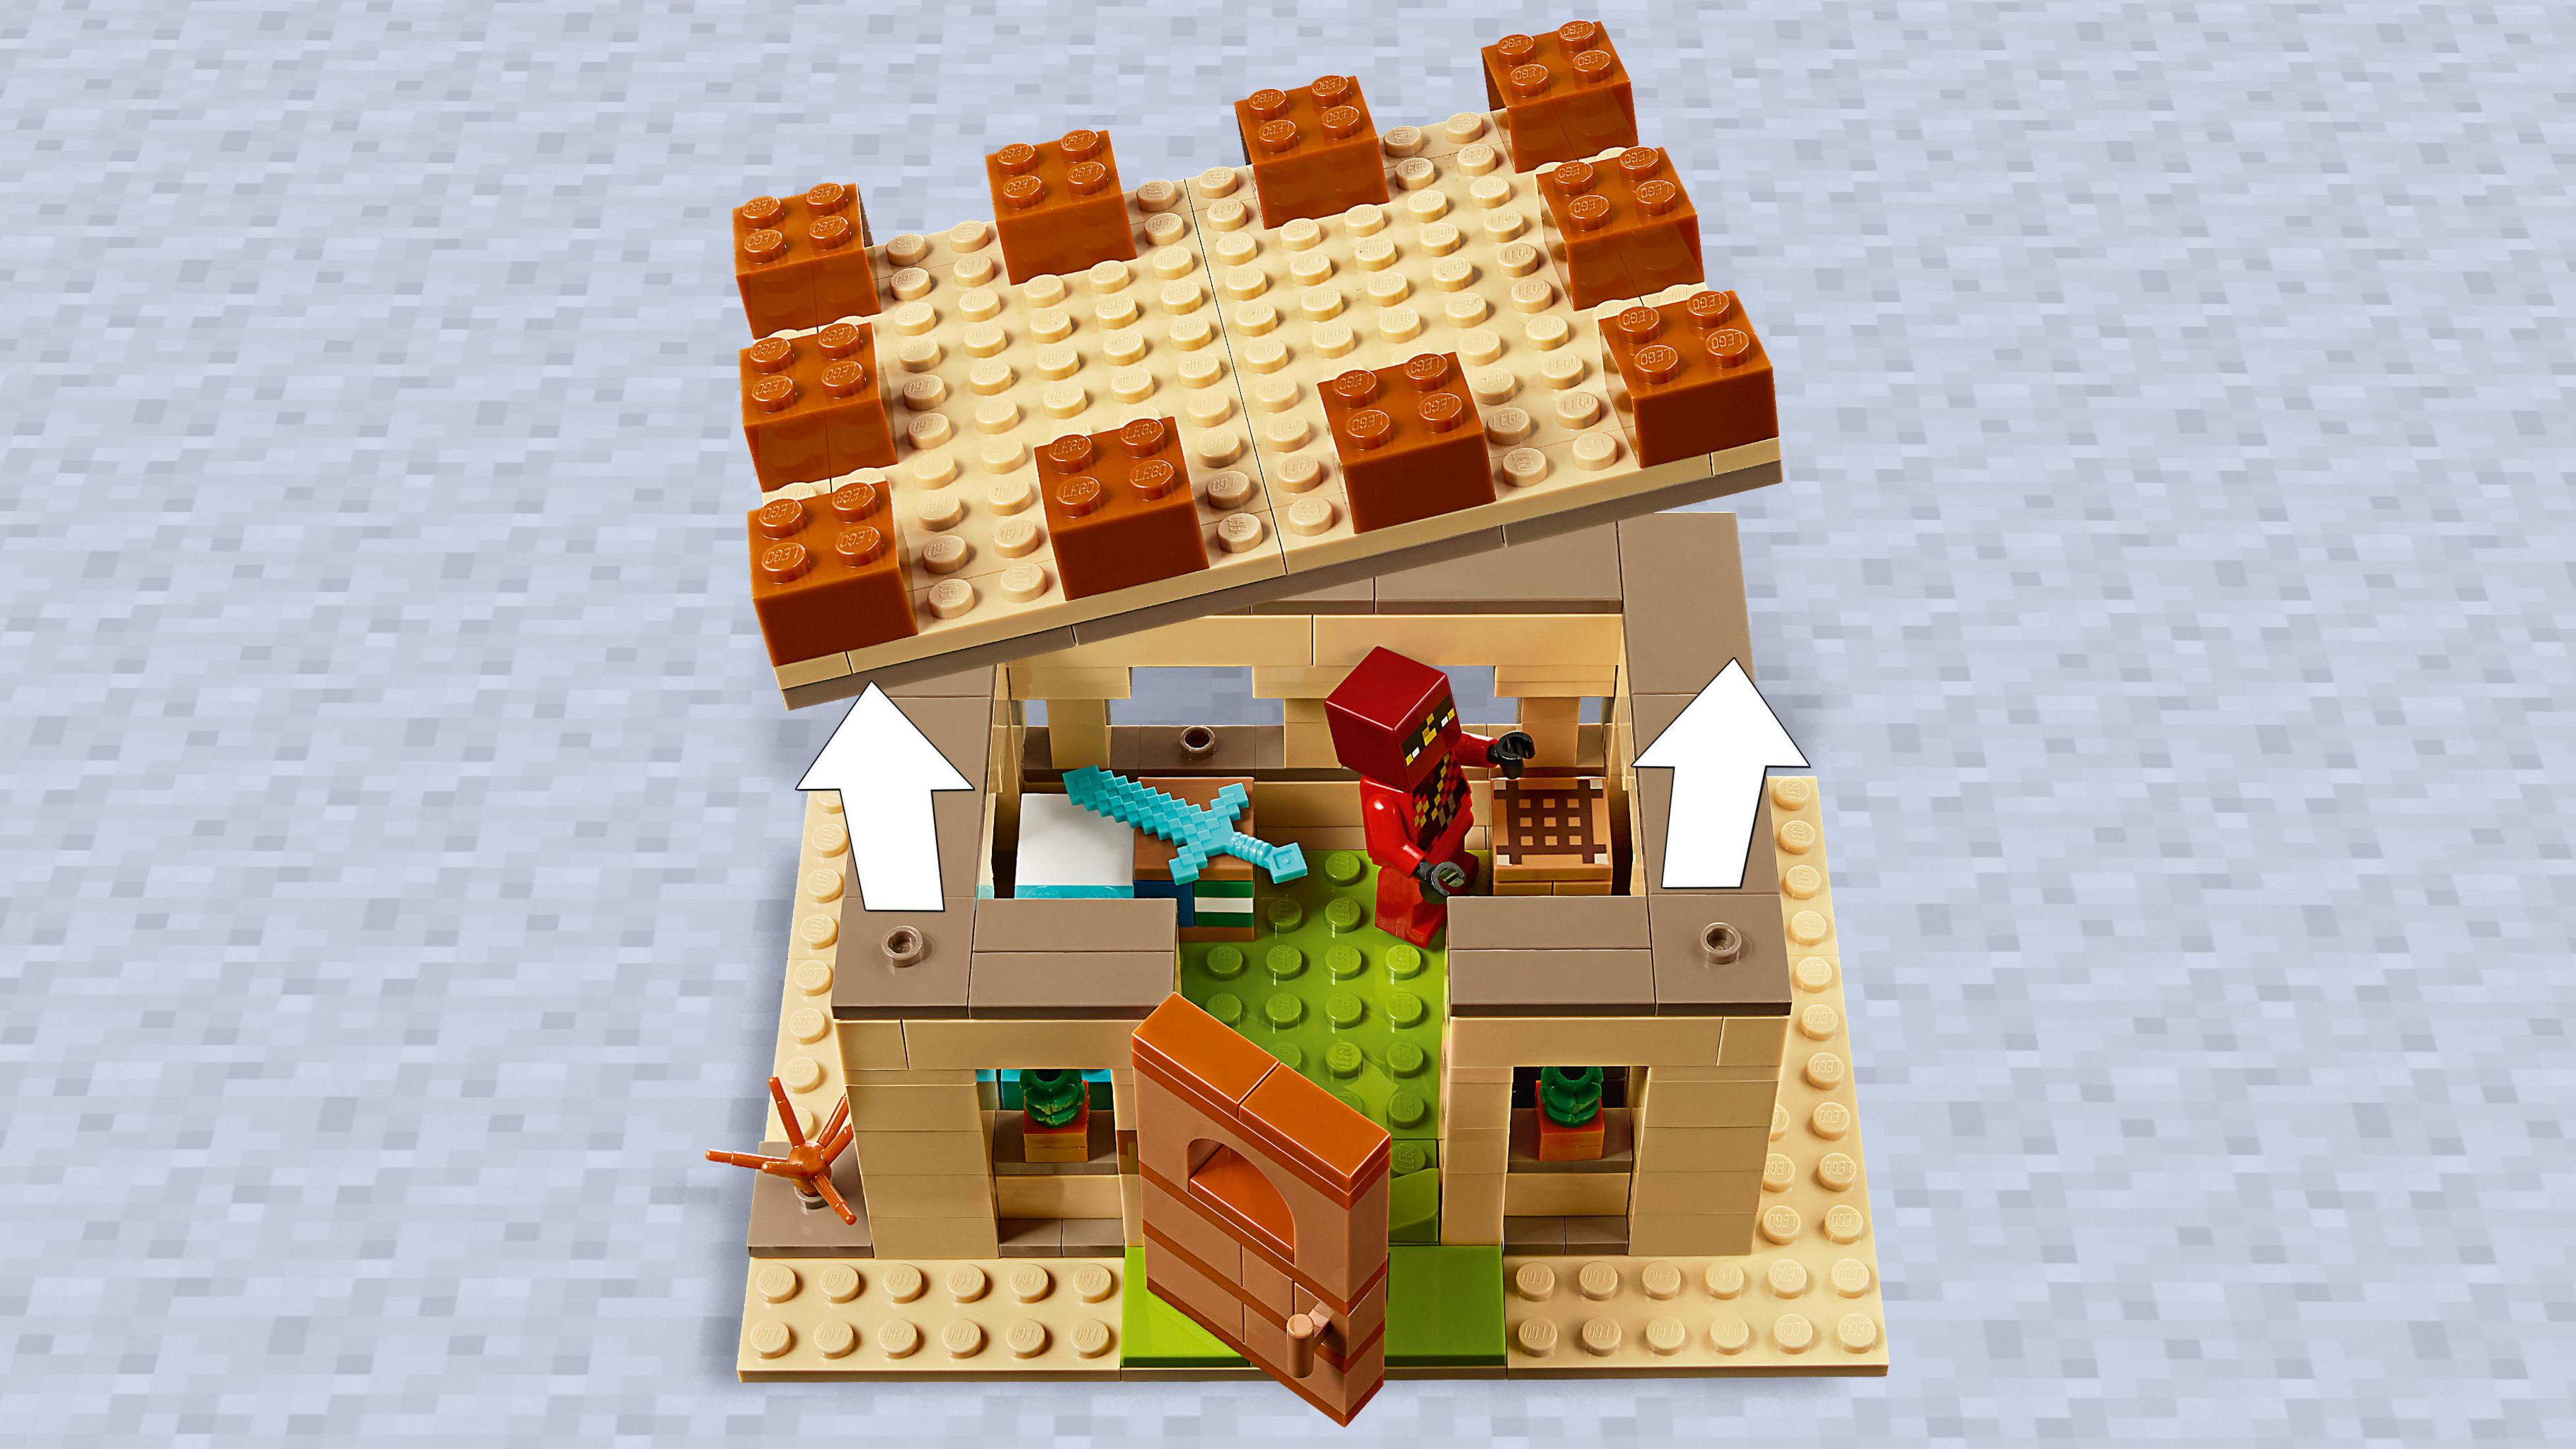 ILLAGER-ÜBERFALL 21160 Mehrfarbig Bausatz, DER LEGO